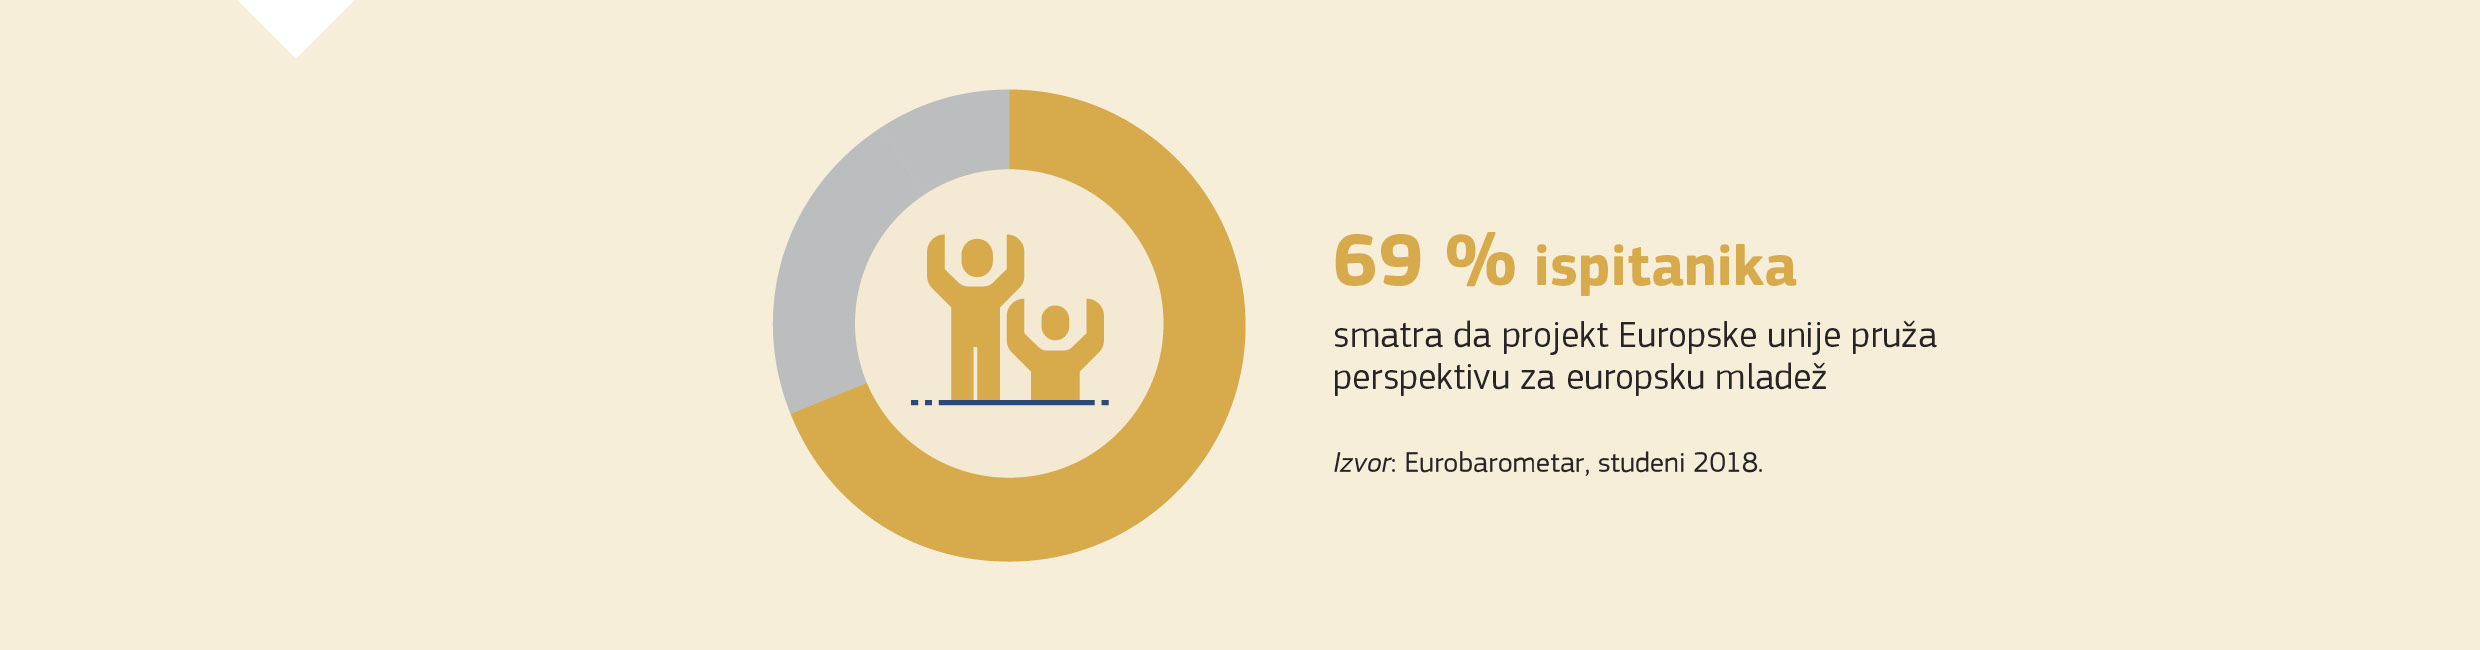 69 % ispitanika smatra da projekt Europske unije pruža perspektivu za europsku mladež. Izvor: Eurobarometar, studeni 2018.